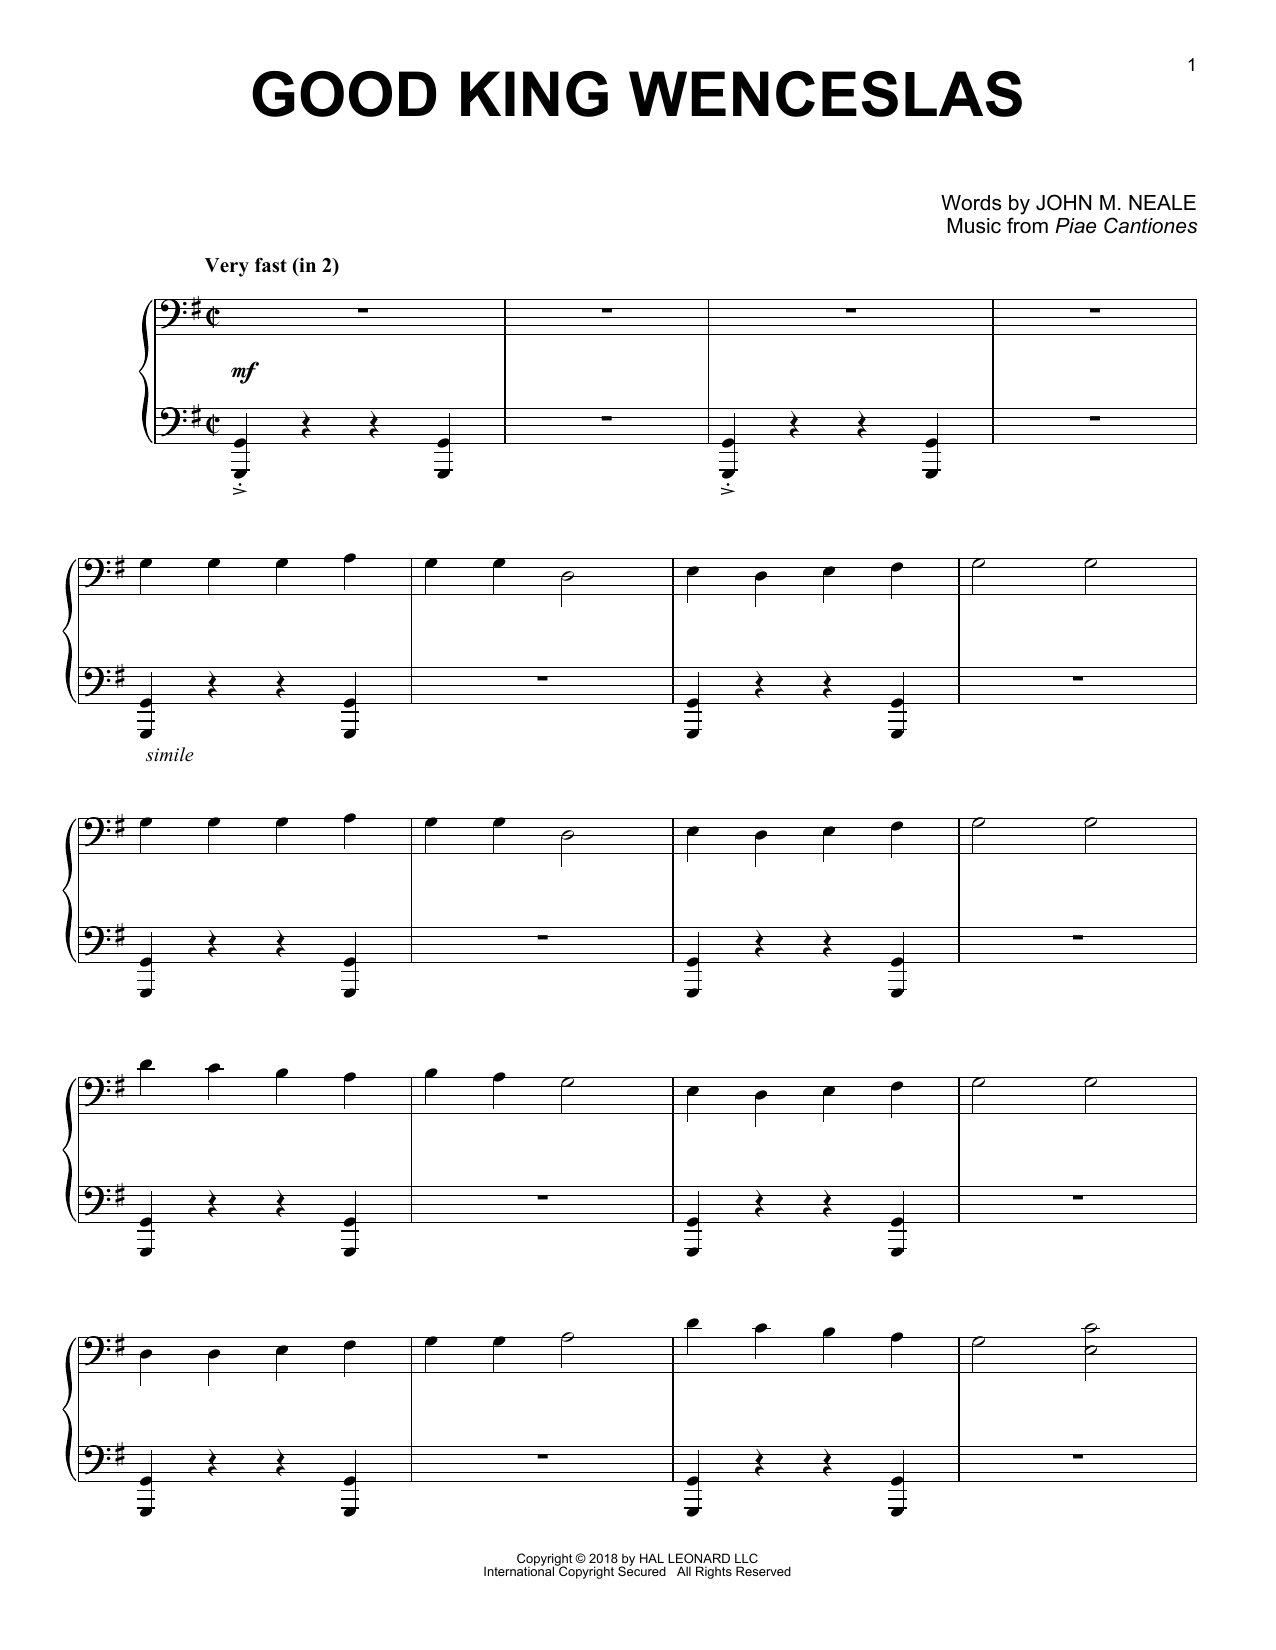 John M. Neale Good King Wenceslas [Jazz version] Sheet Music Notes & Chords for Piano - Download or Print PDF